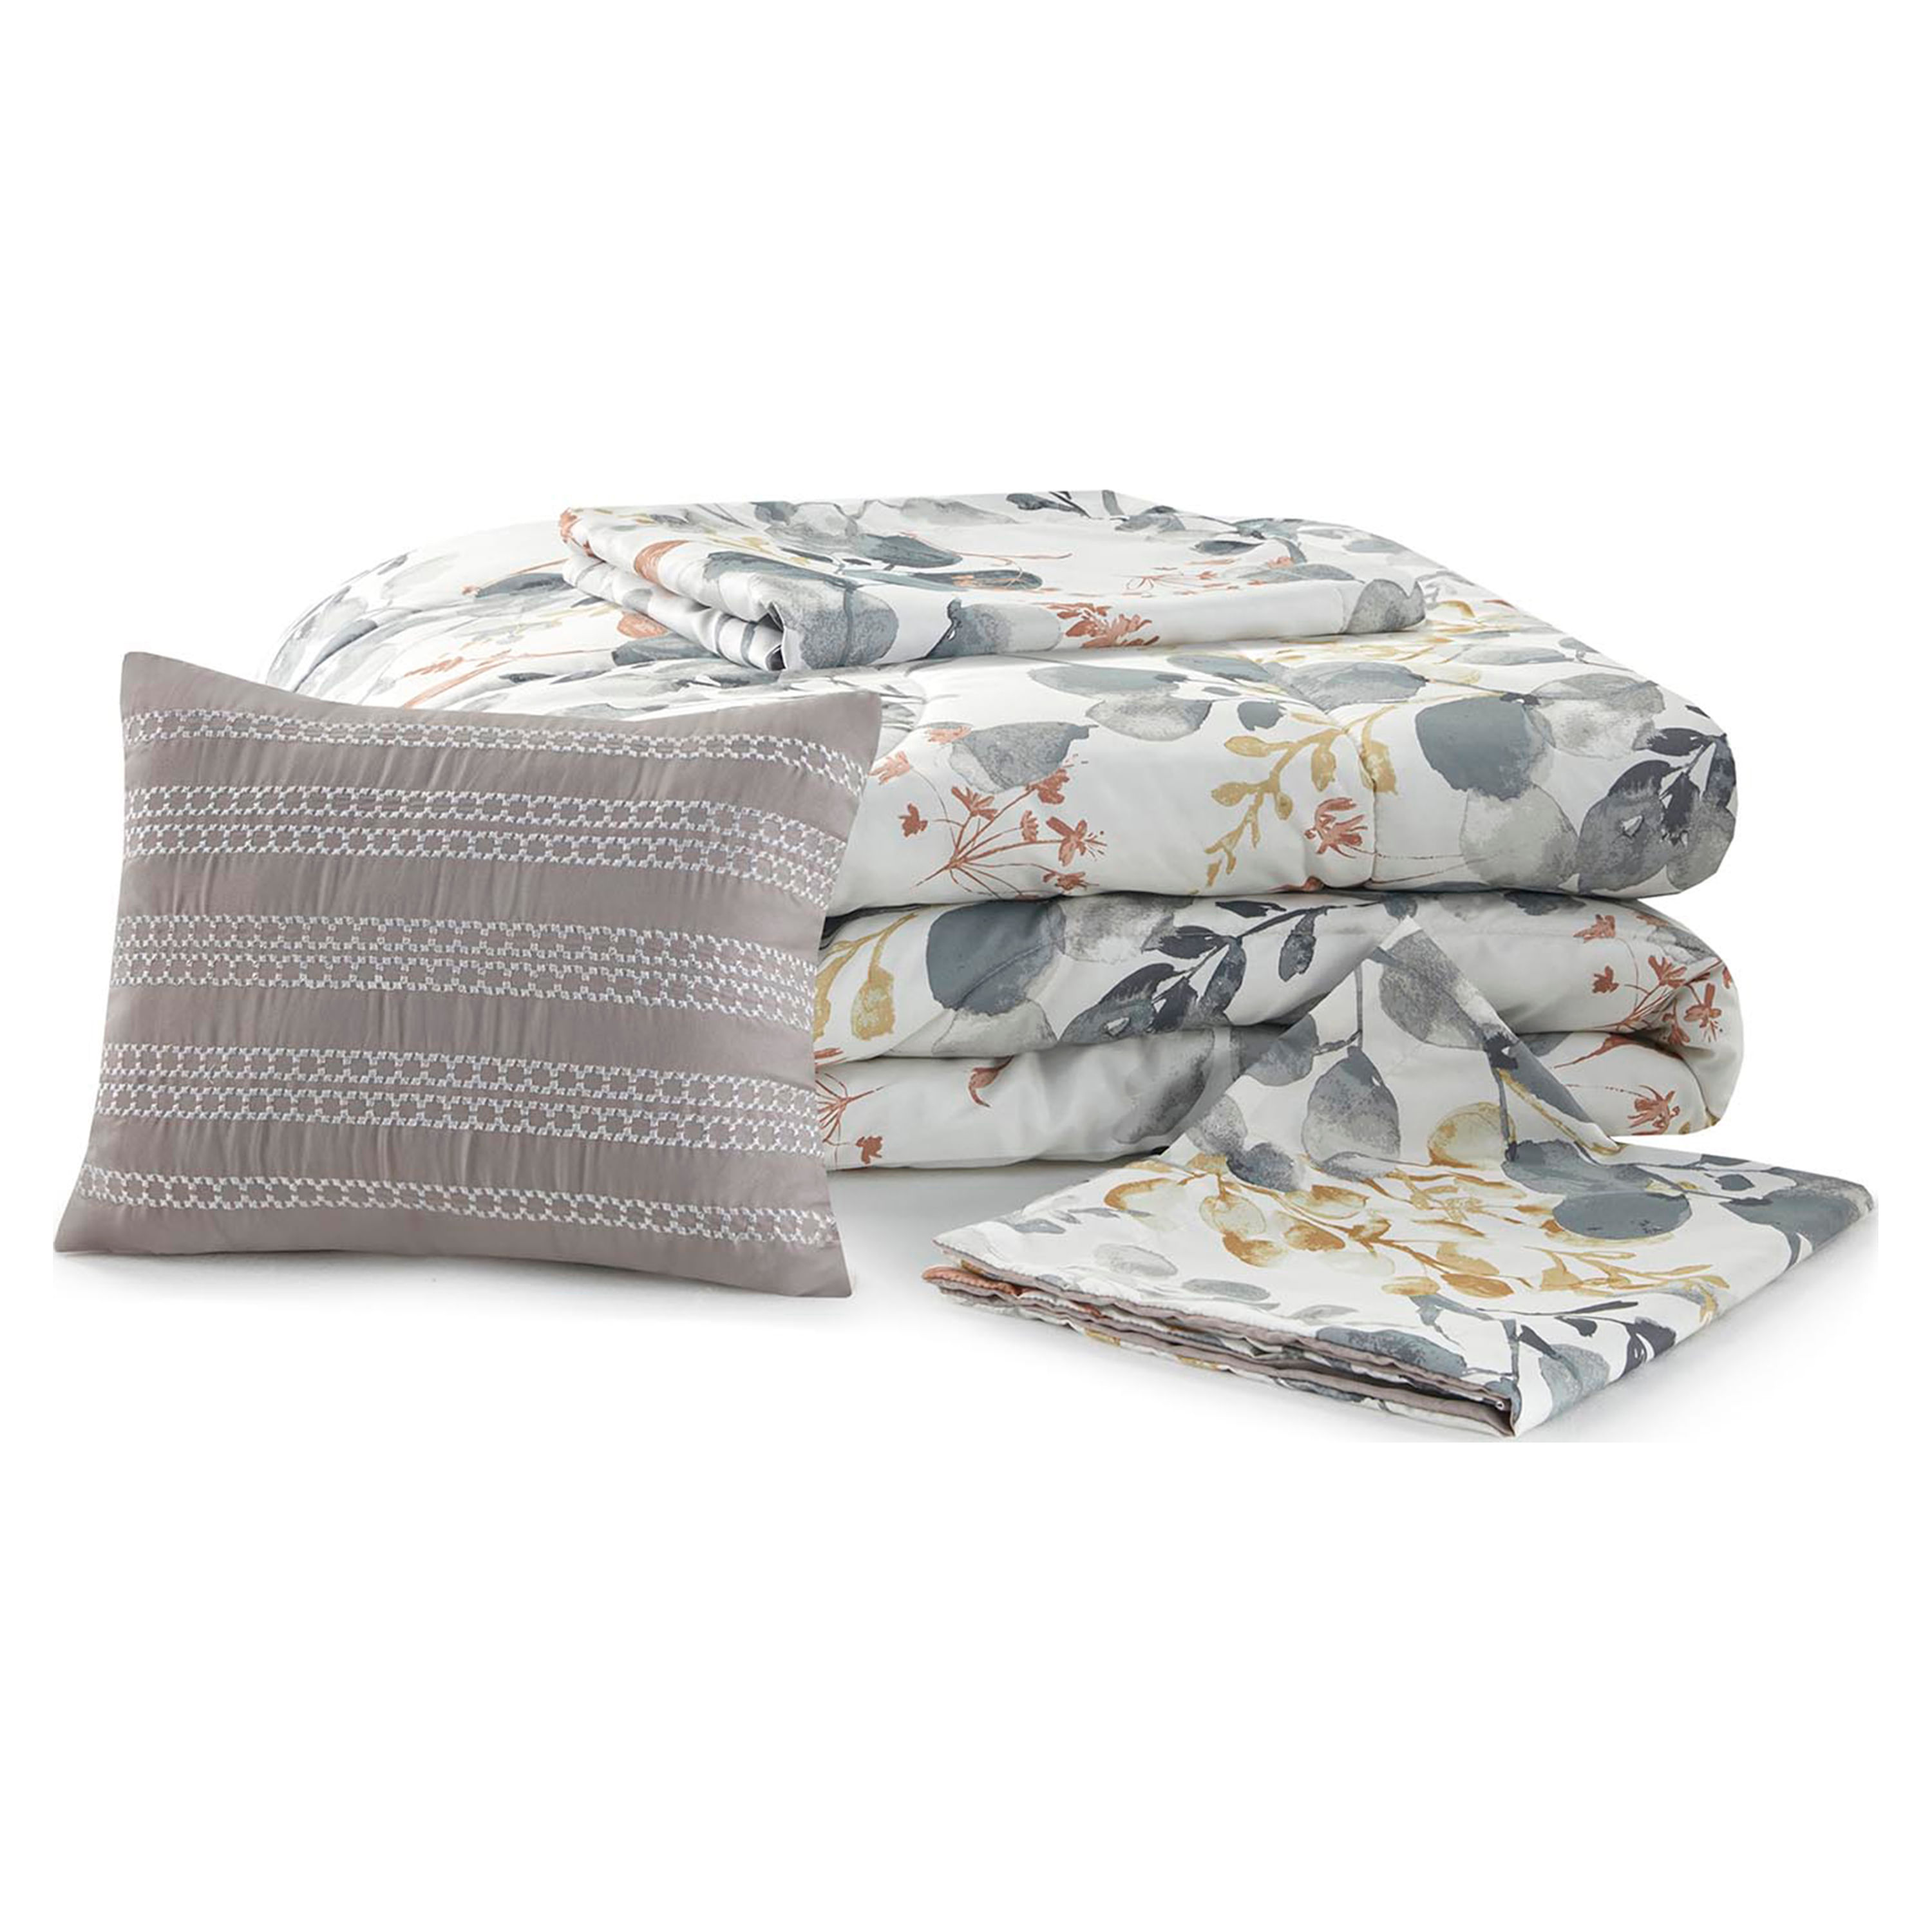 VCNY Home - Juego de edredón Queen, ropa de cama de 8 piezas con diseño  floral jacquard, suave y acogedora decoración de habitación (Arcadia gris